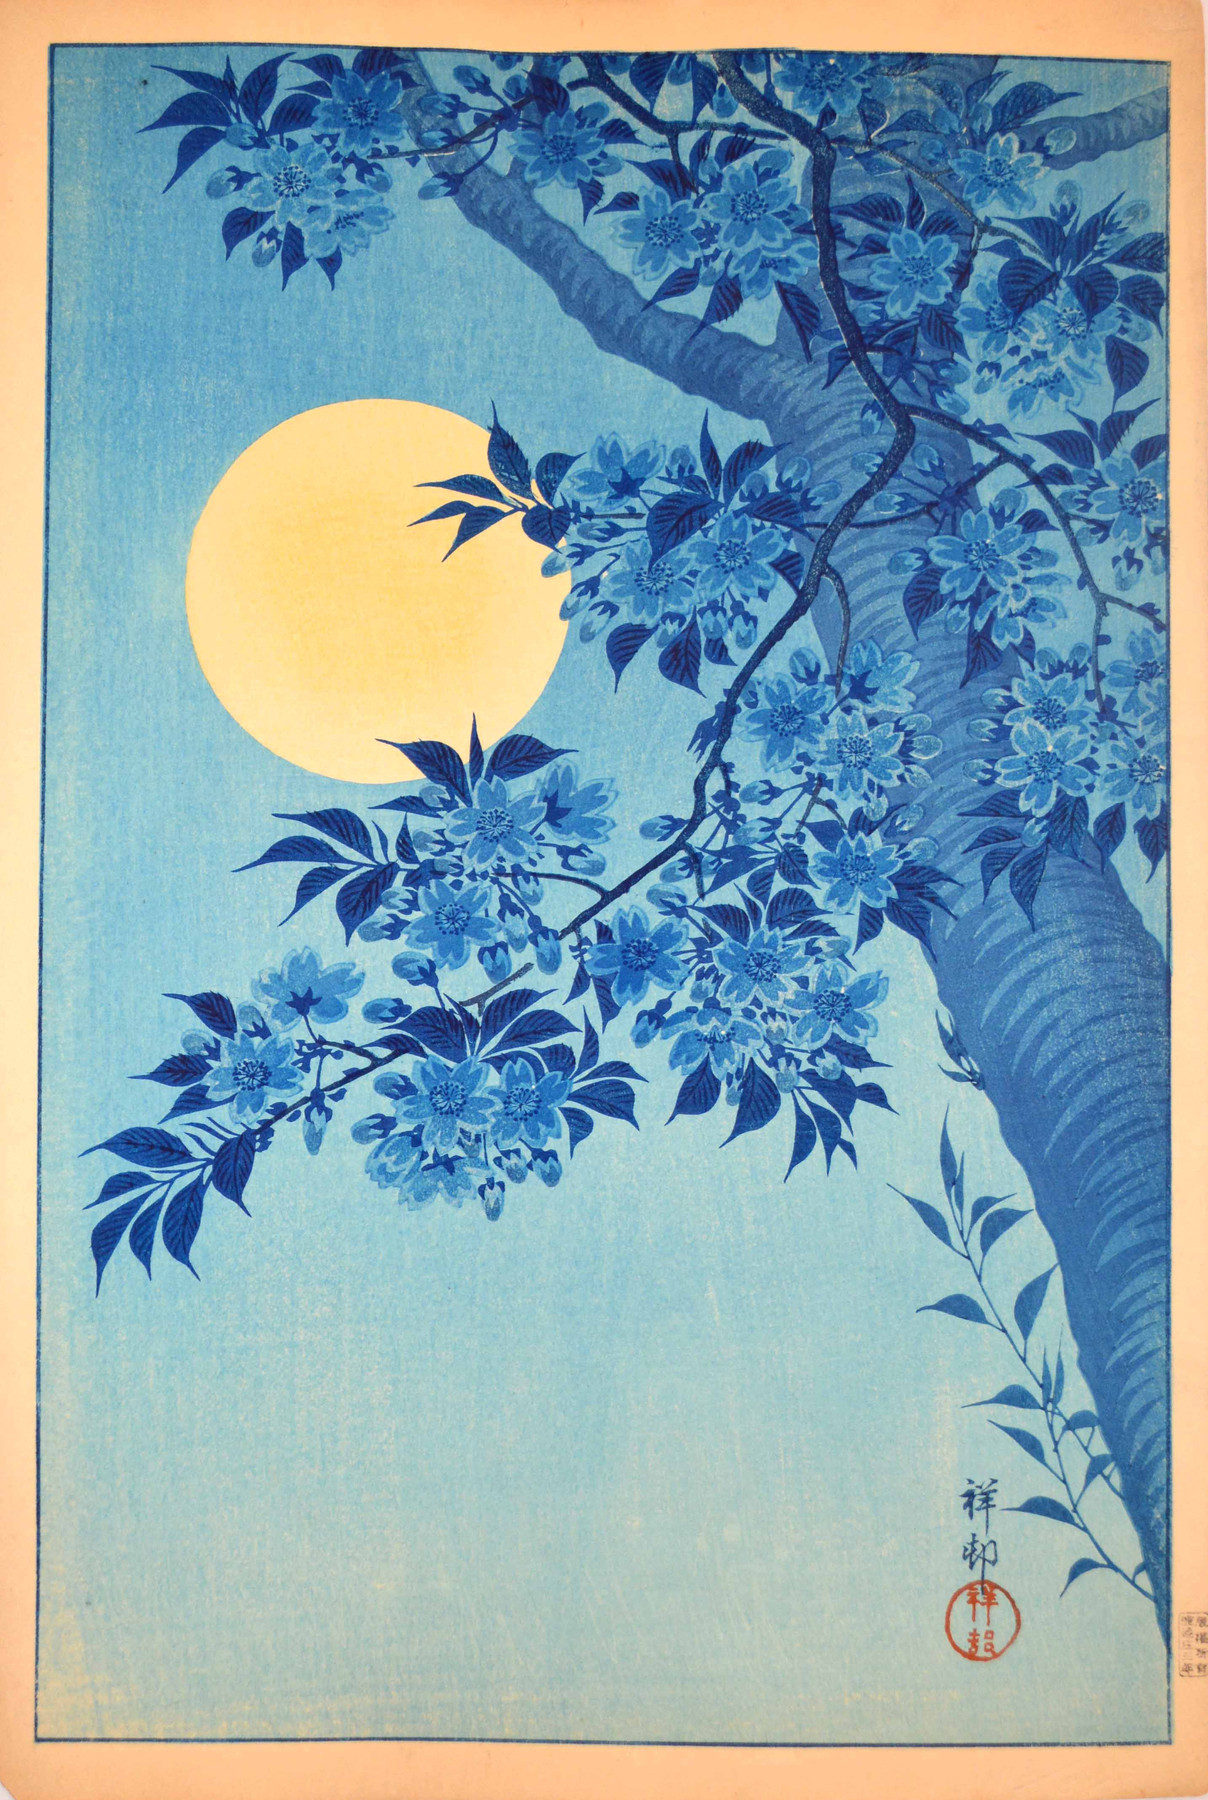 桜の花に満月 by Ohara Koson - 1932年 - 26 x 39 cm 